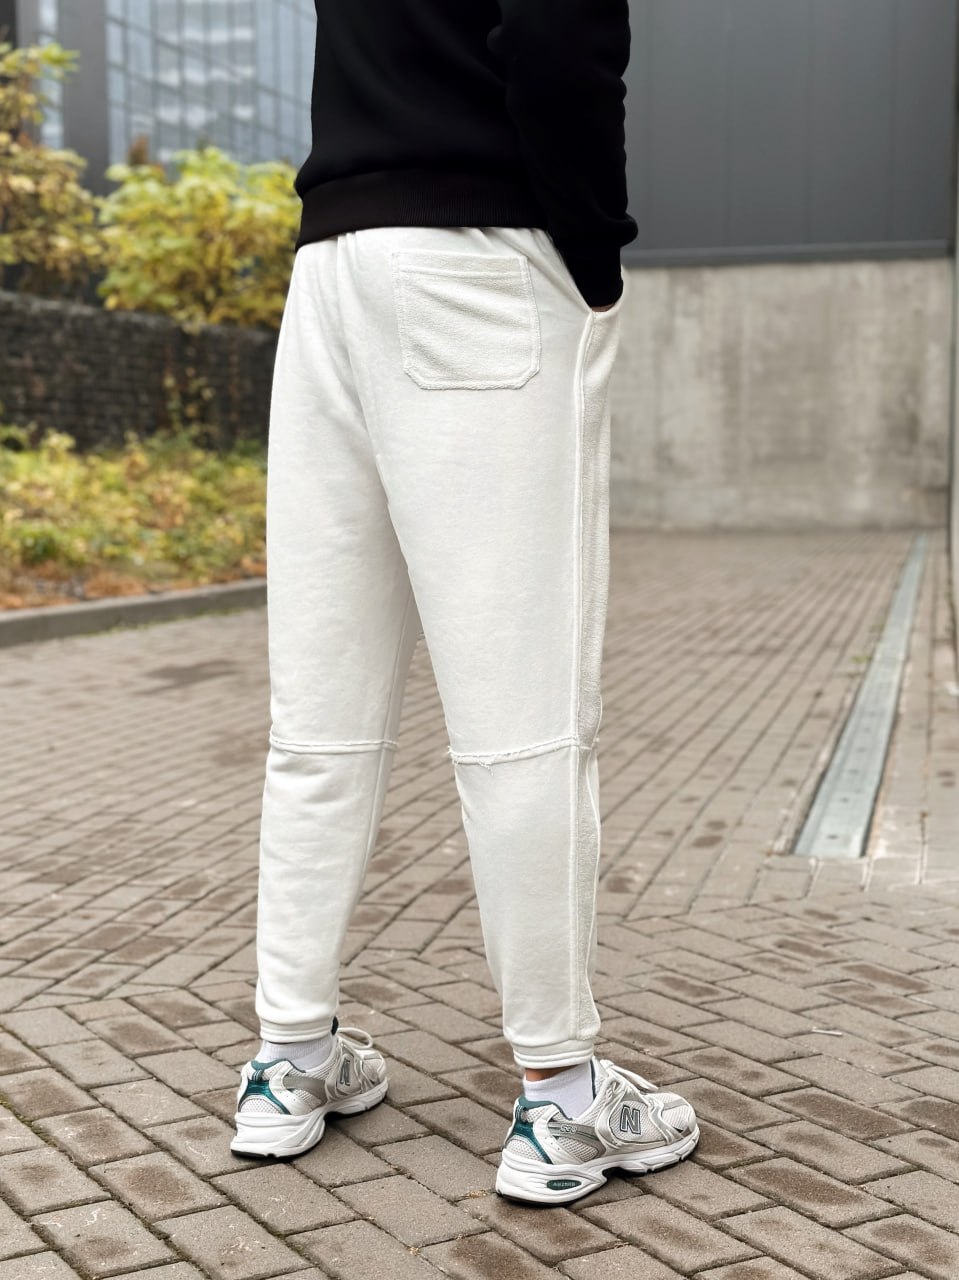 Чоловічі спортивні штани трикотажні Reload Rough молочні / Спортивки завуженні стильні демісезонні - Фото 4